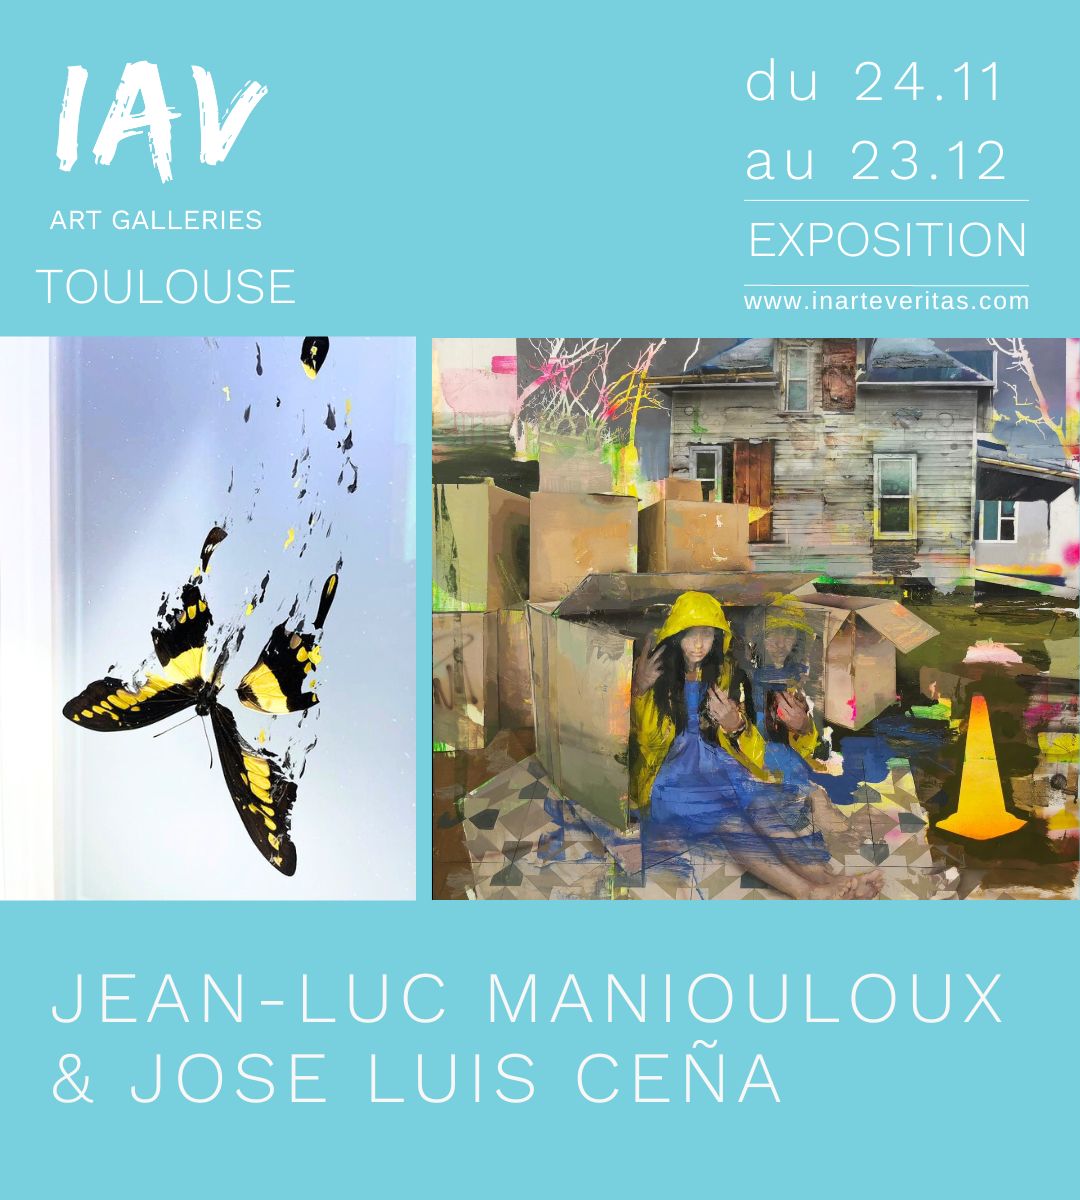 Miniature Expo Ceña & Maniouloux - IAV Toulouse